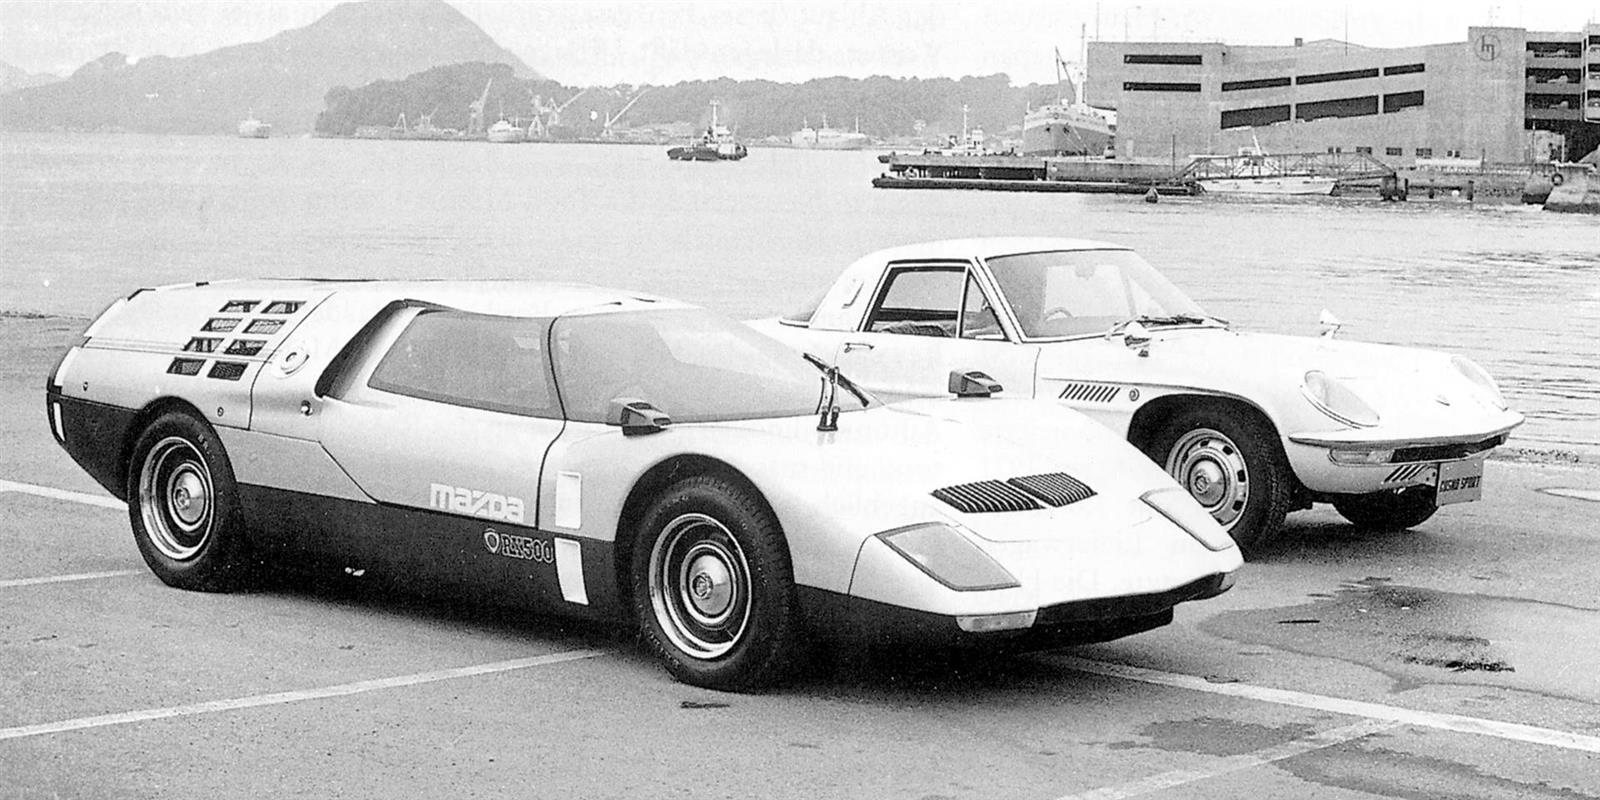 1970 Mazda RX-500